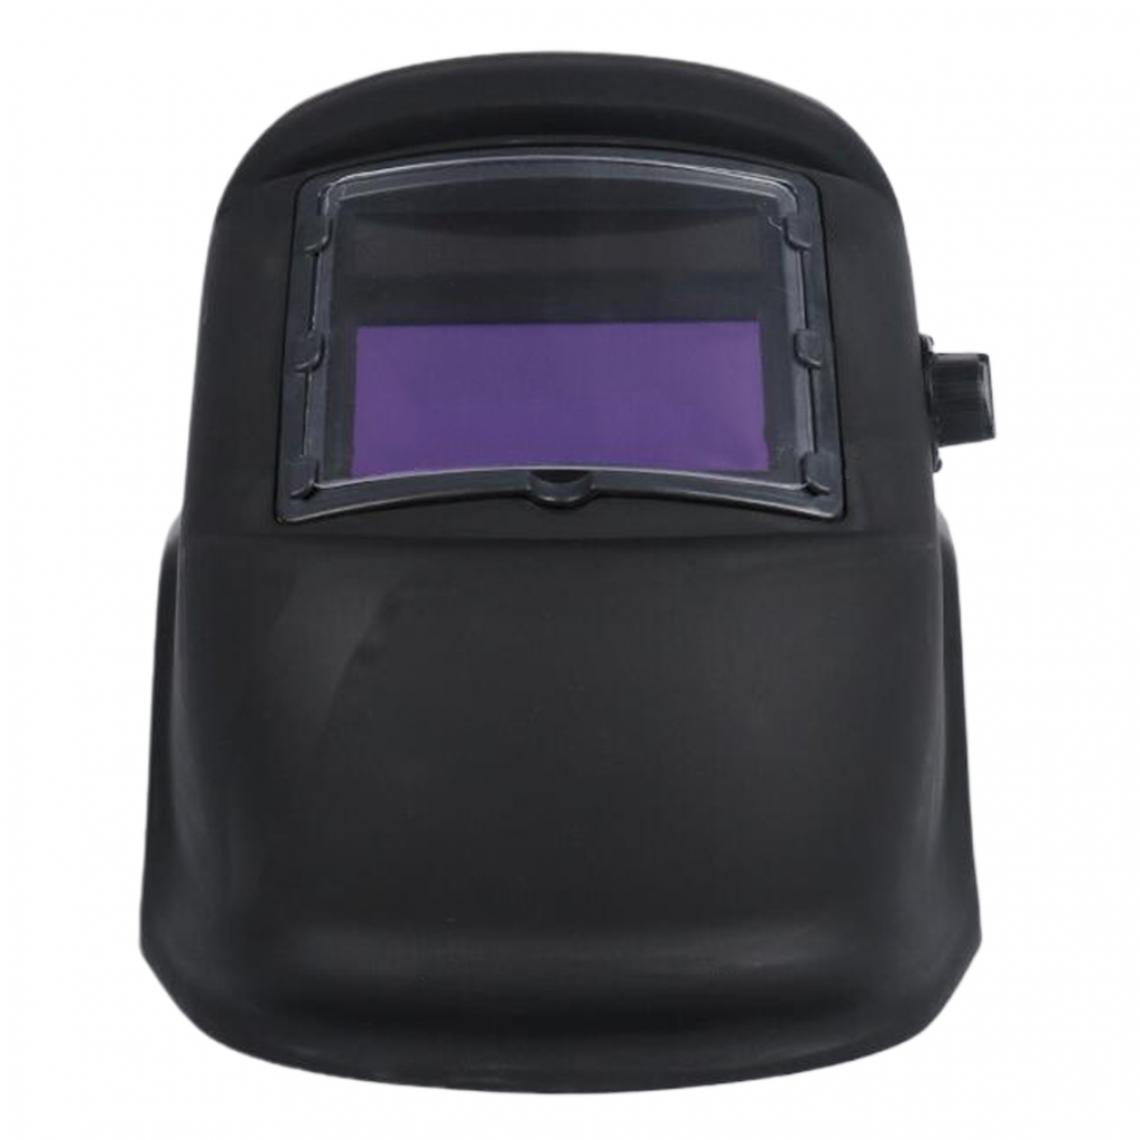 marque generique - Black Solar Powered Auto Darkening Welding Helmet 2 Arc Sensor Wide Shade Welder Mask - Accessoires de soudure